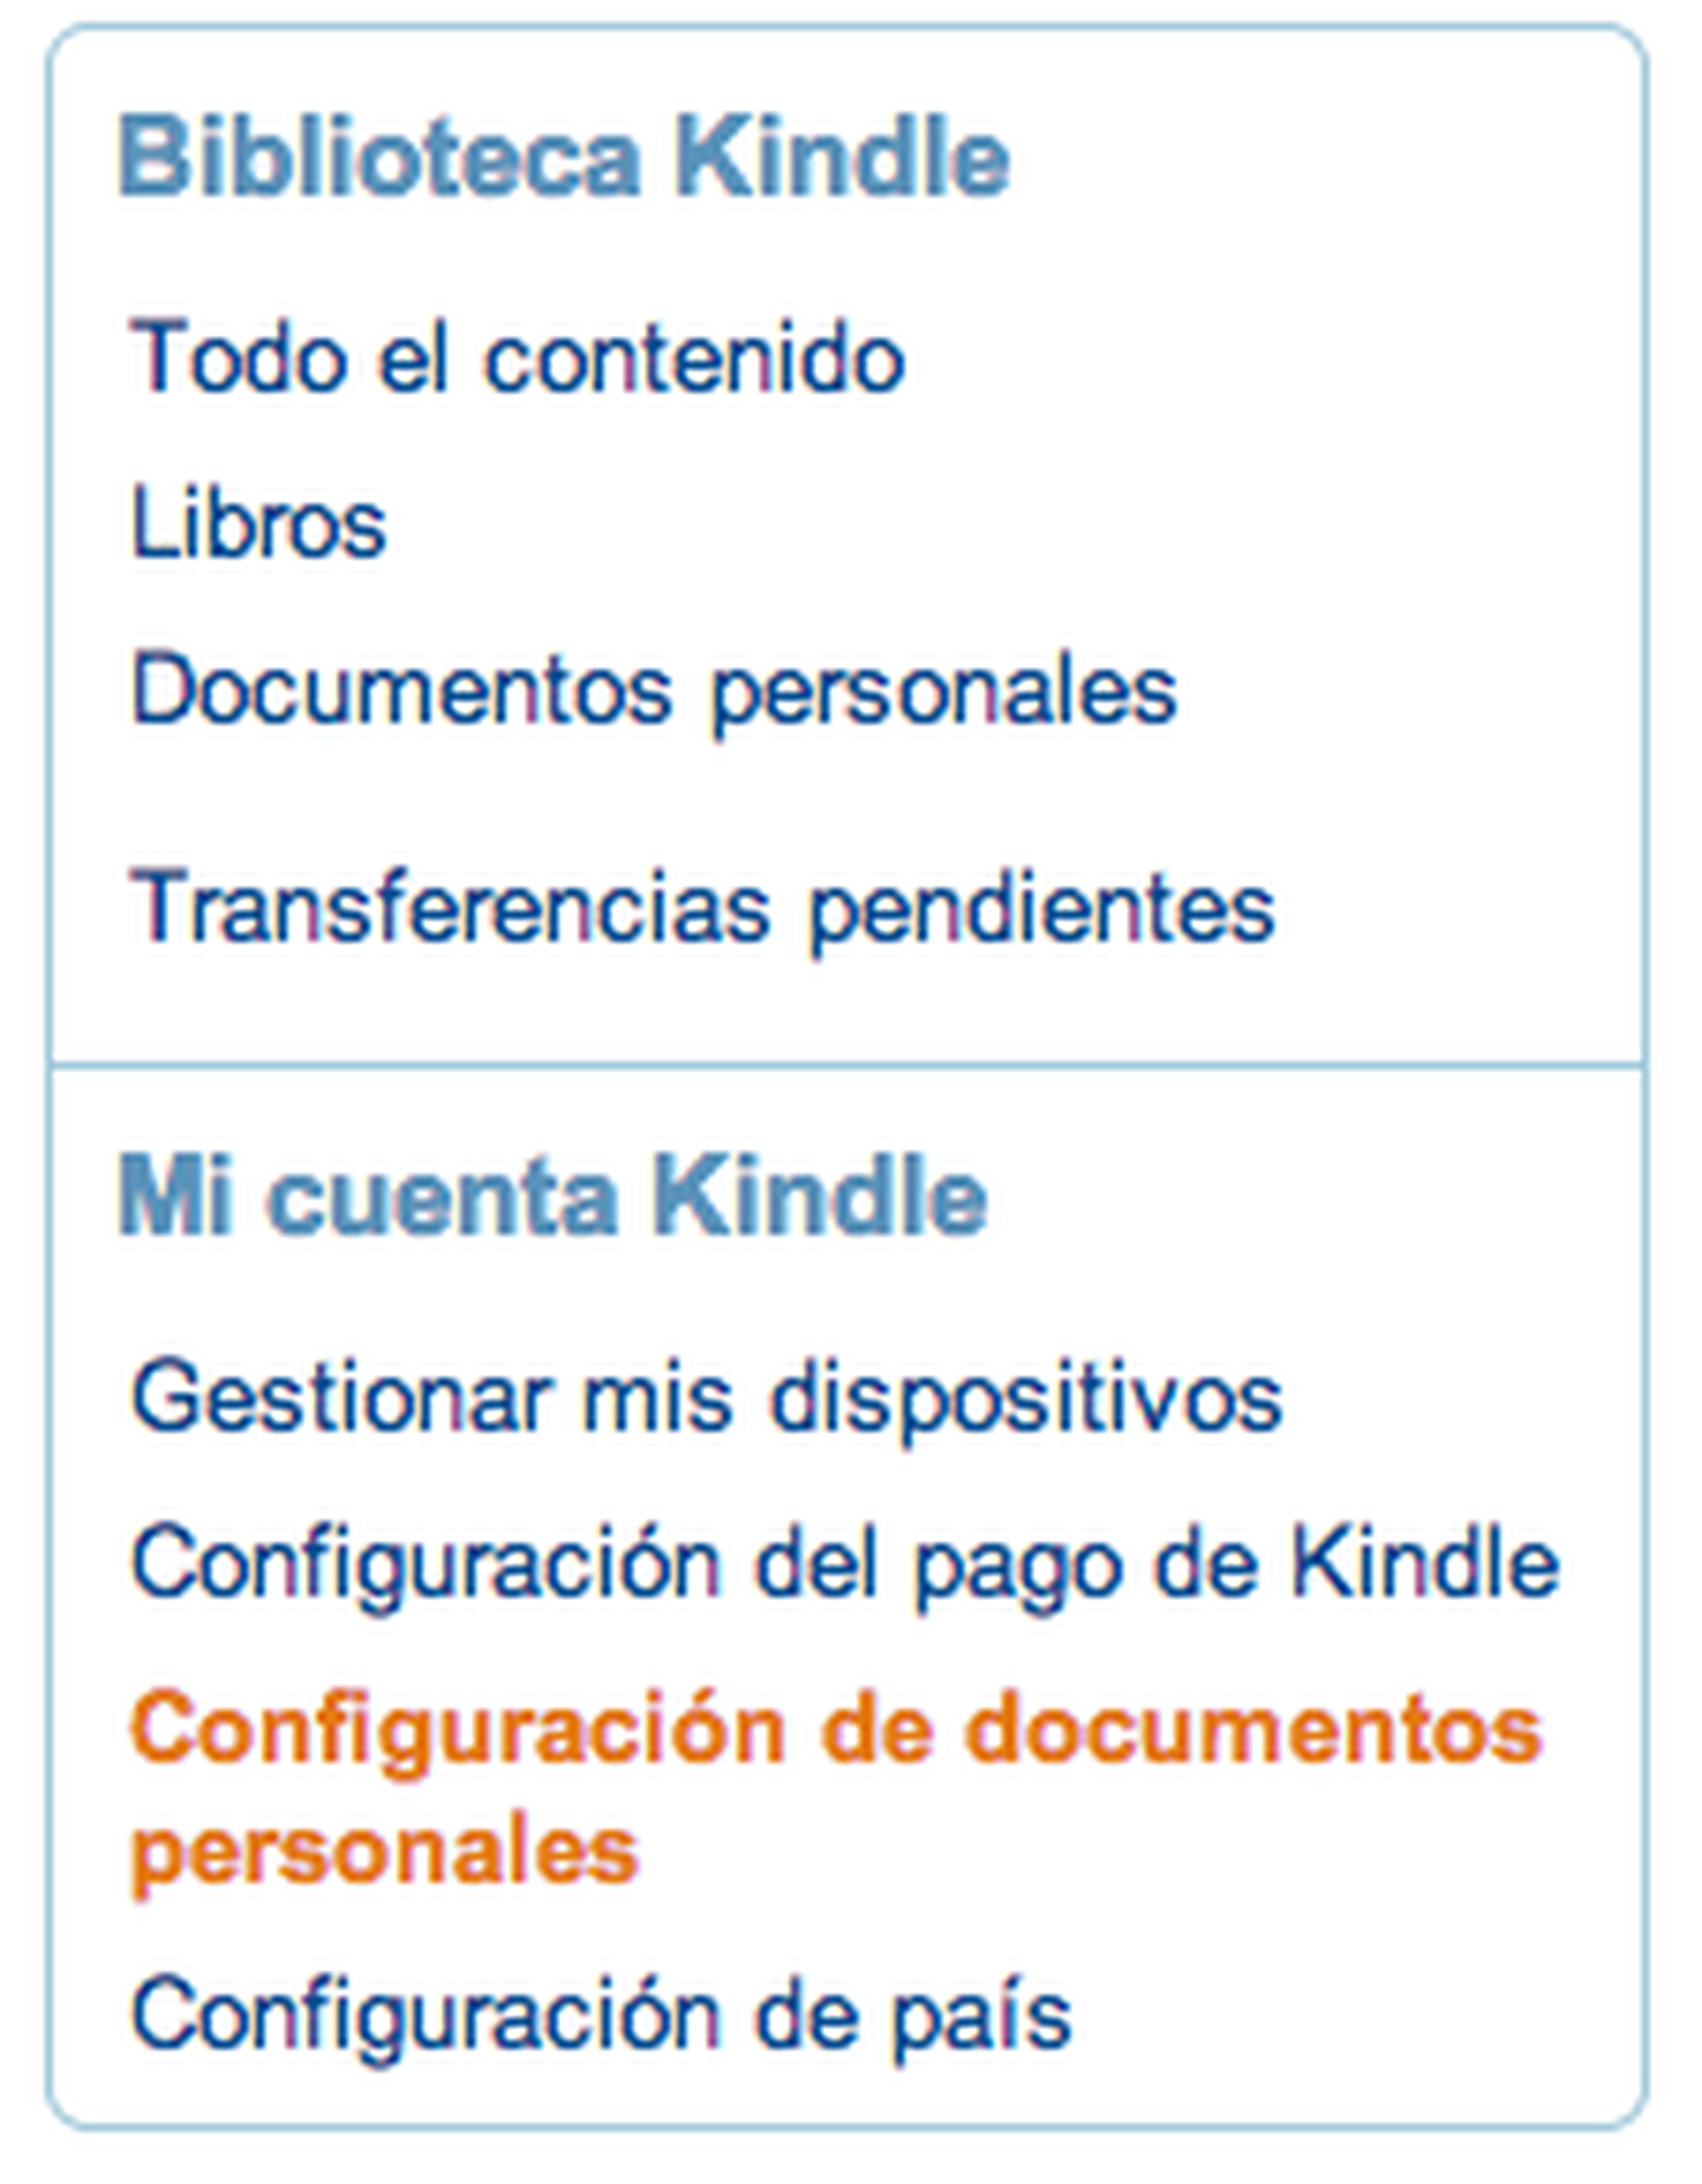 Configuración de documentos personales Amazon Kindle